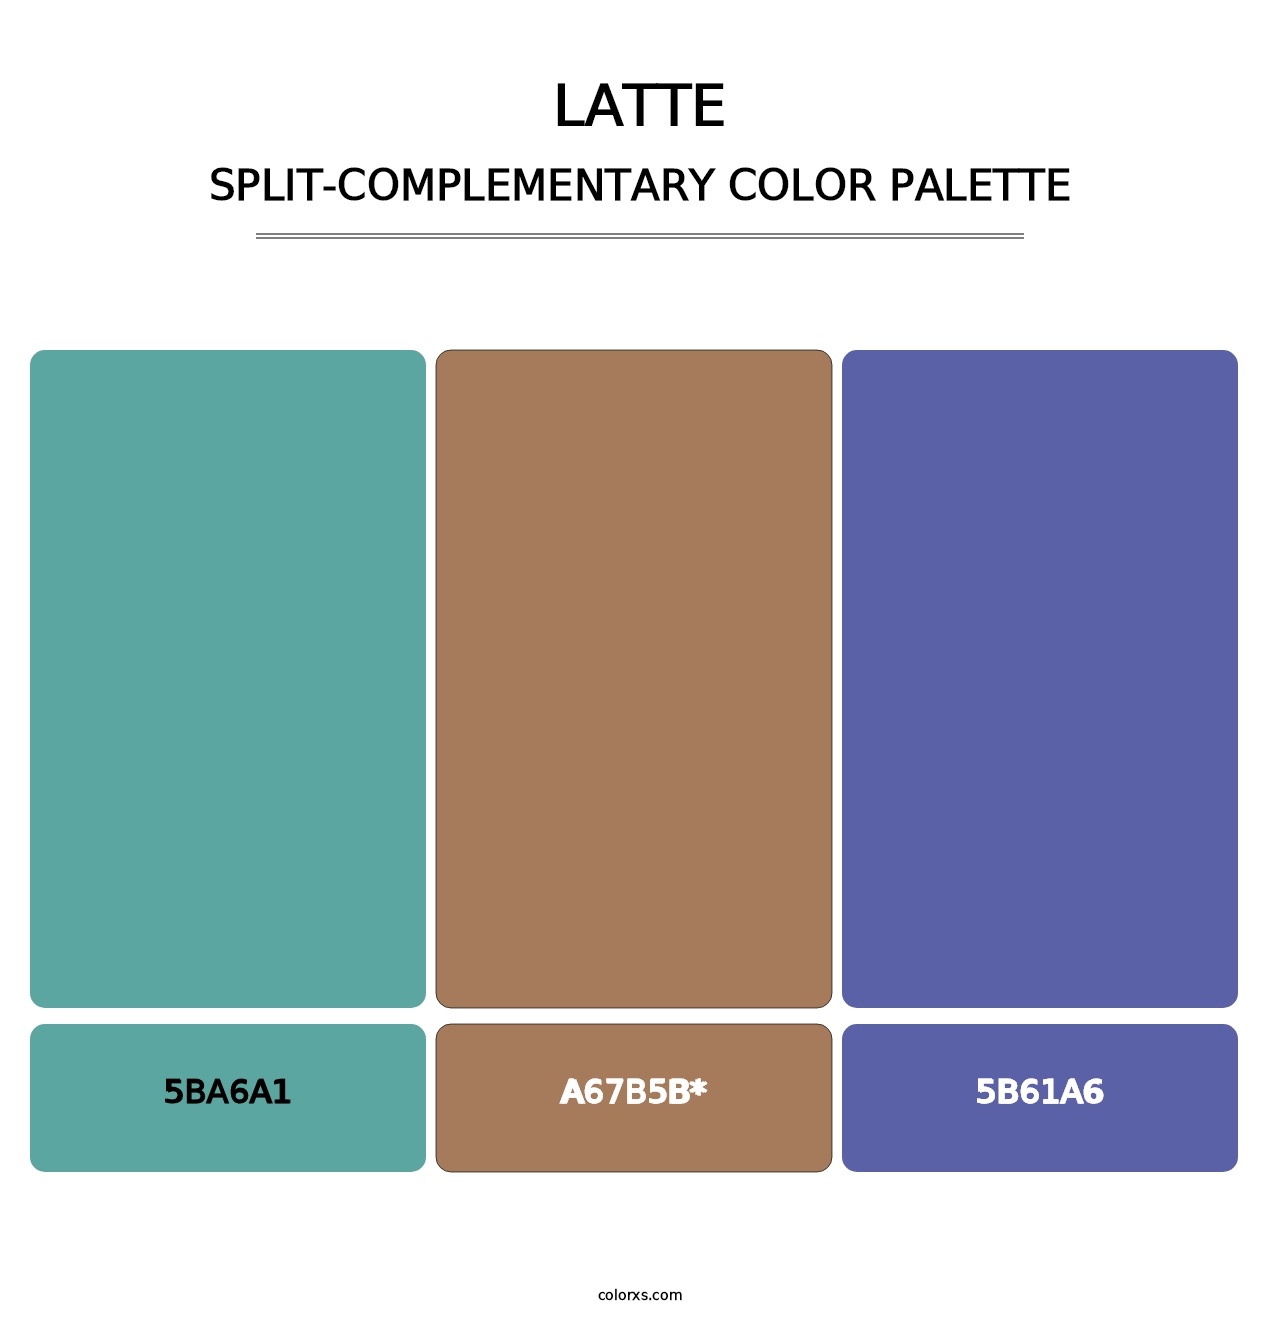 Latte - Split-Complementary Color Palette